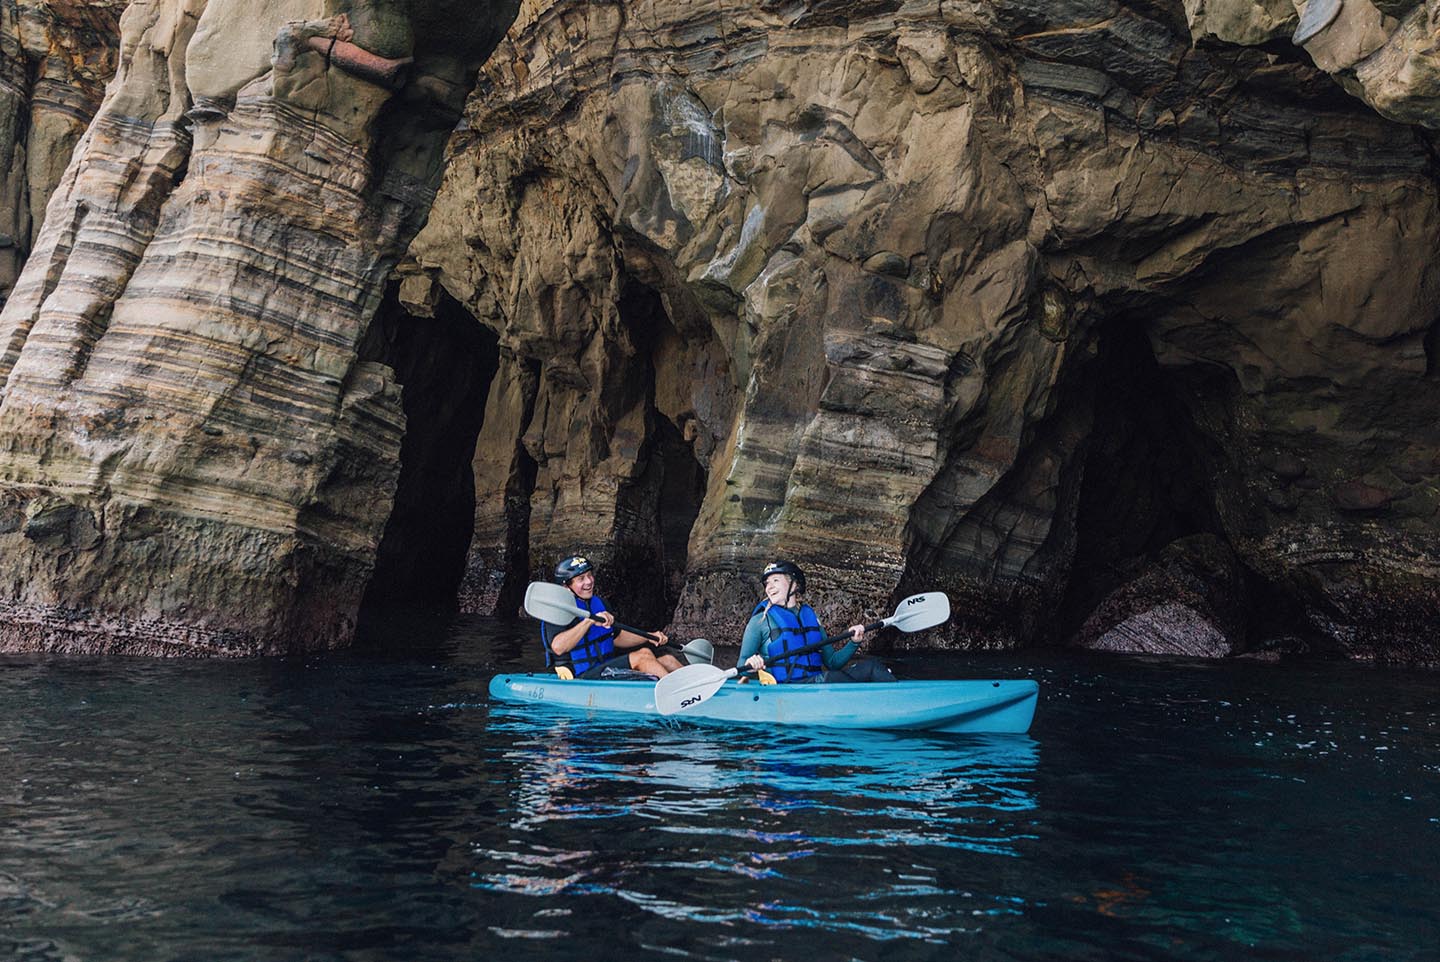 Dos kayakistas en el mismo kayak en un recorrido en kayak por una cueva marina con Everyday California, remando junto a imponentes acantilados de cuevas marinas. El océano está en calma, no hay olas.